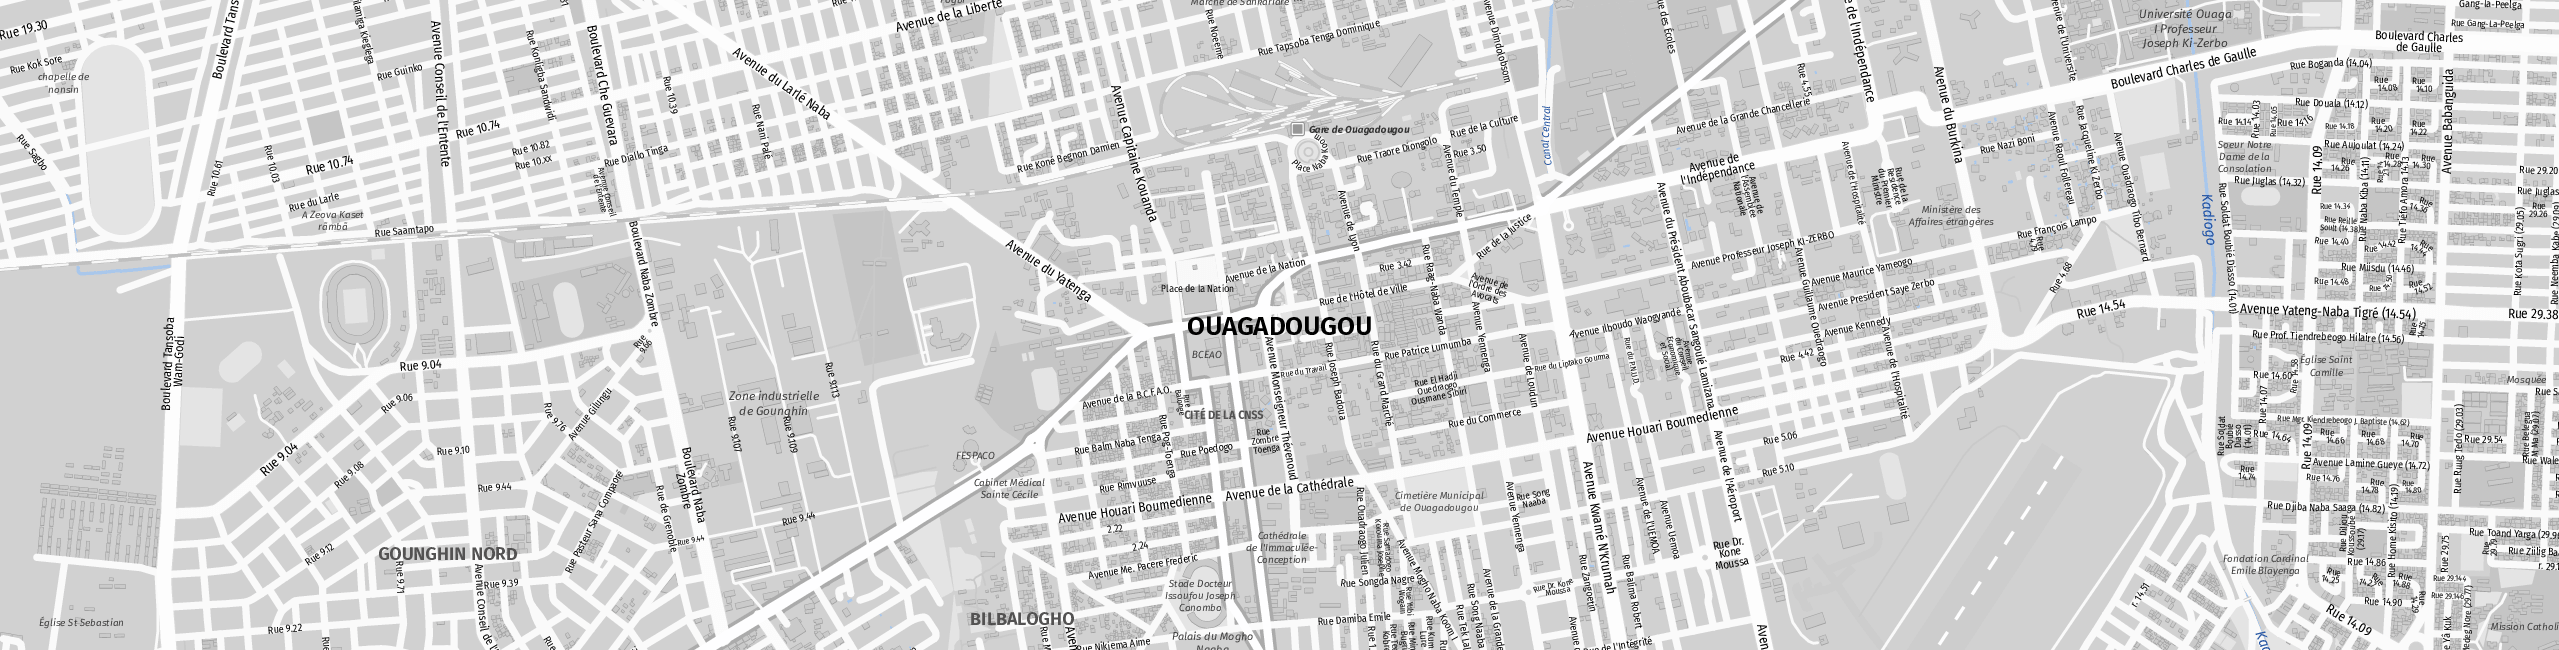 Stadtplan Ouagadougou zum Downloaden.